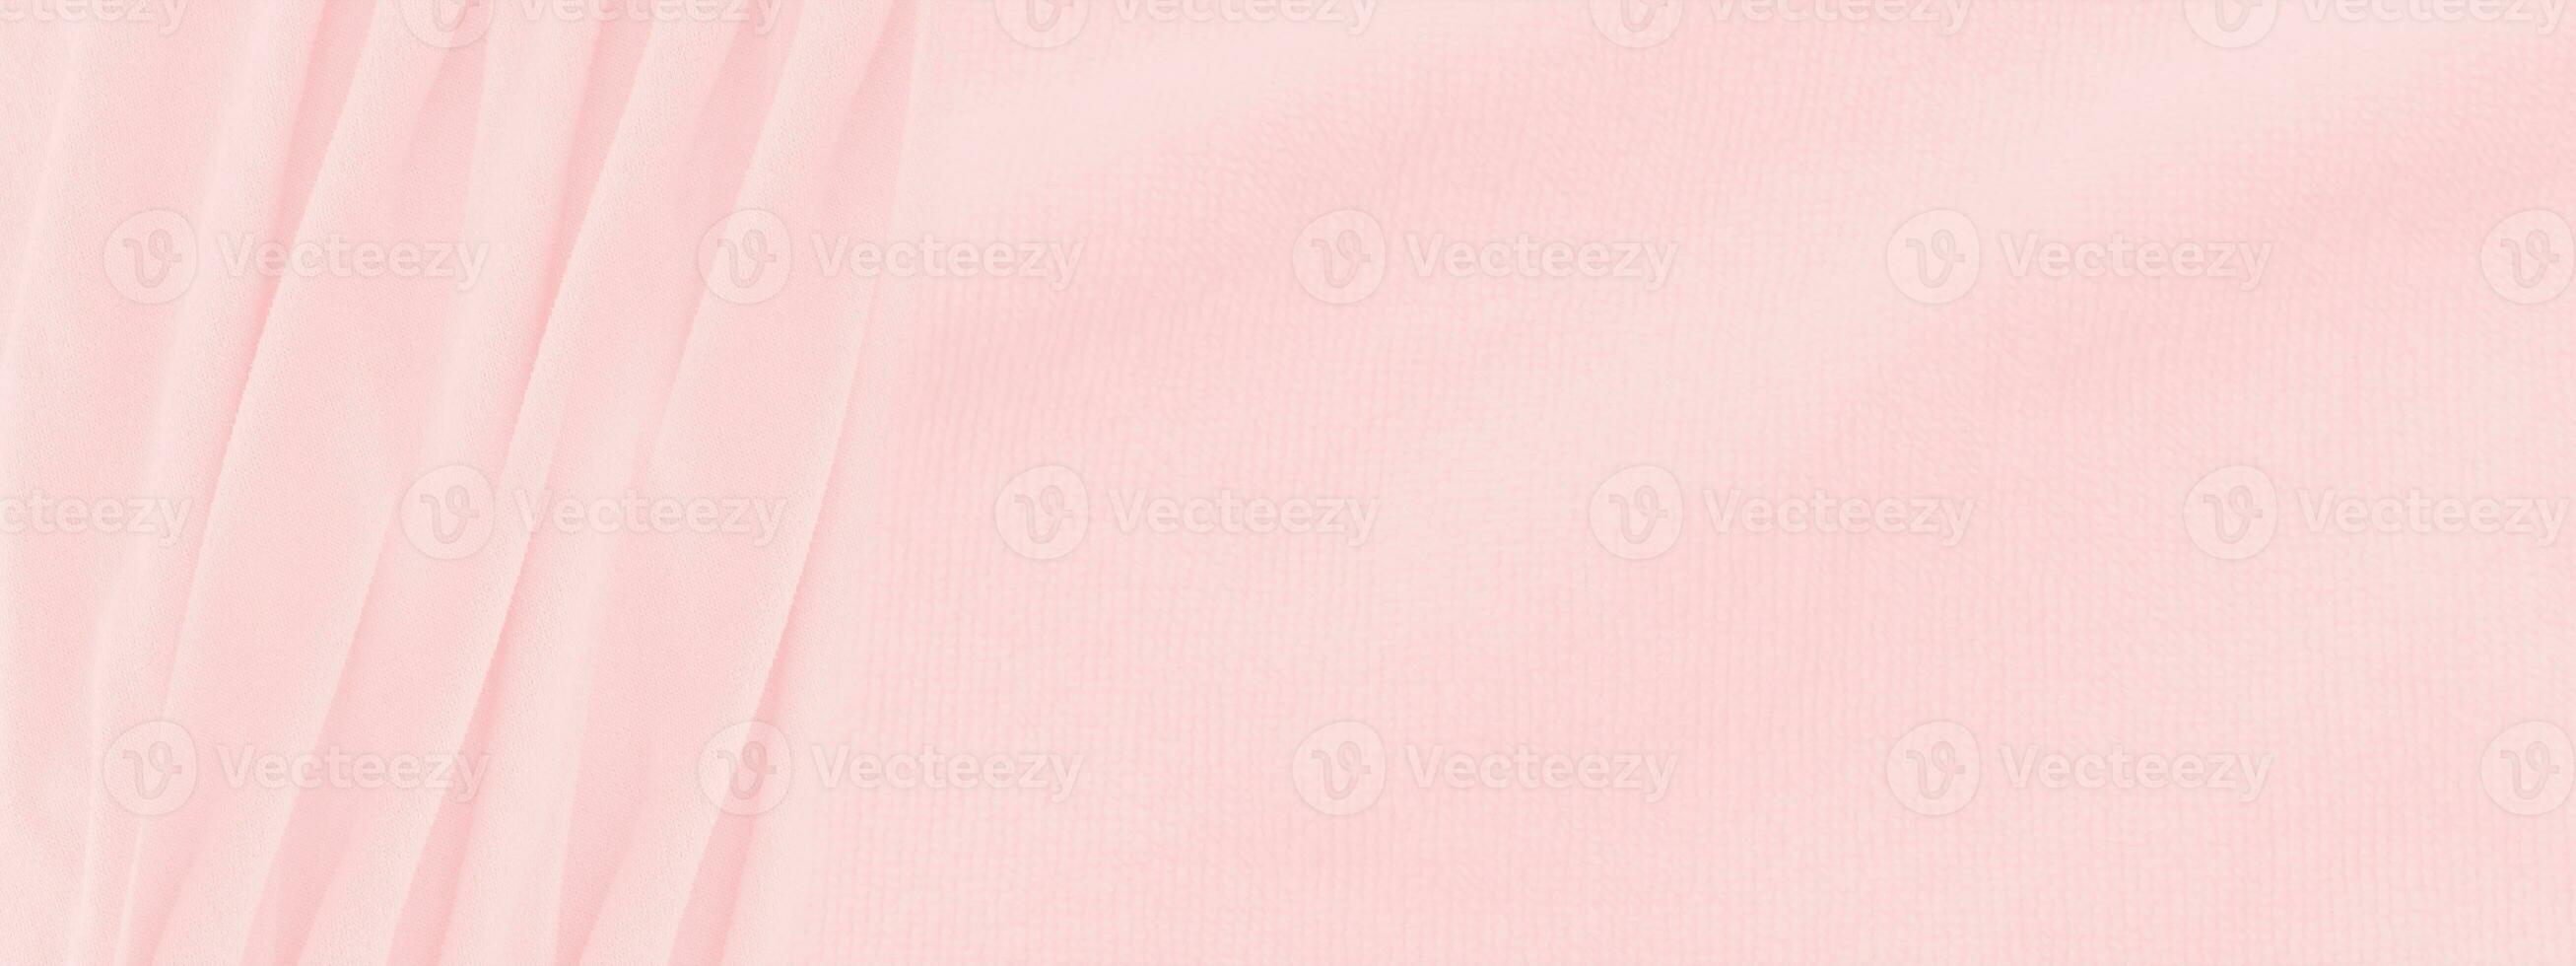 fondo rosa astratto di struttura del tessuto. immagine panoramica foto